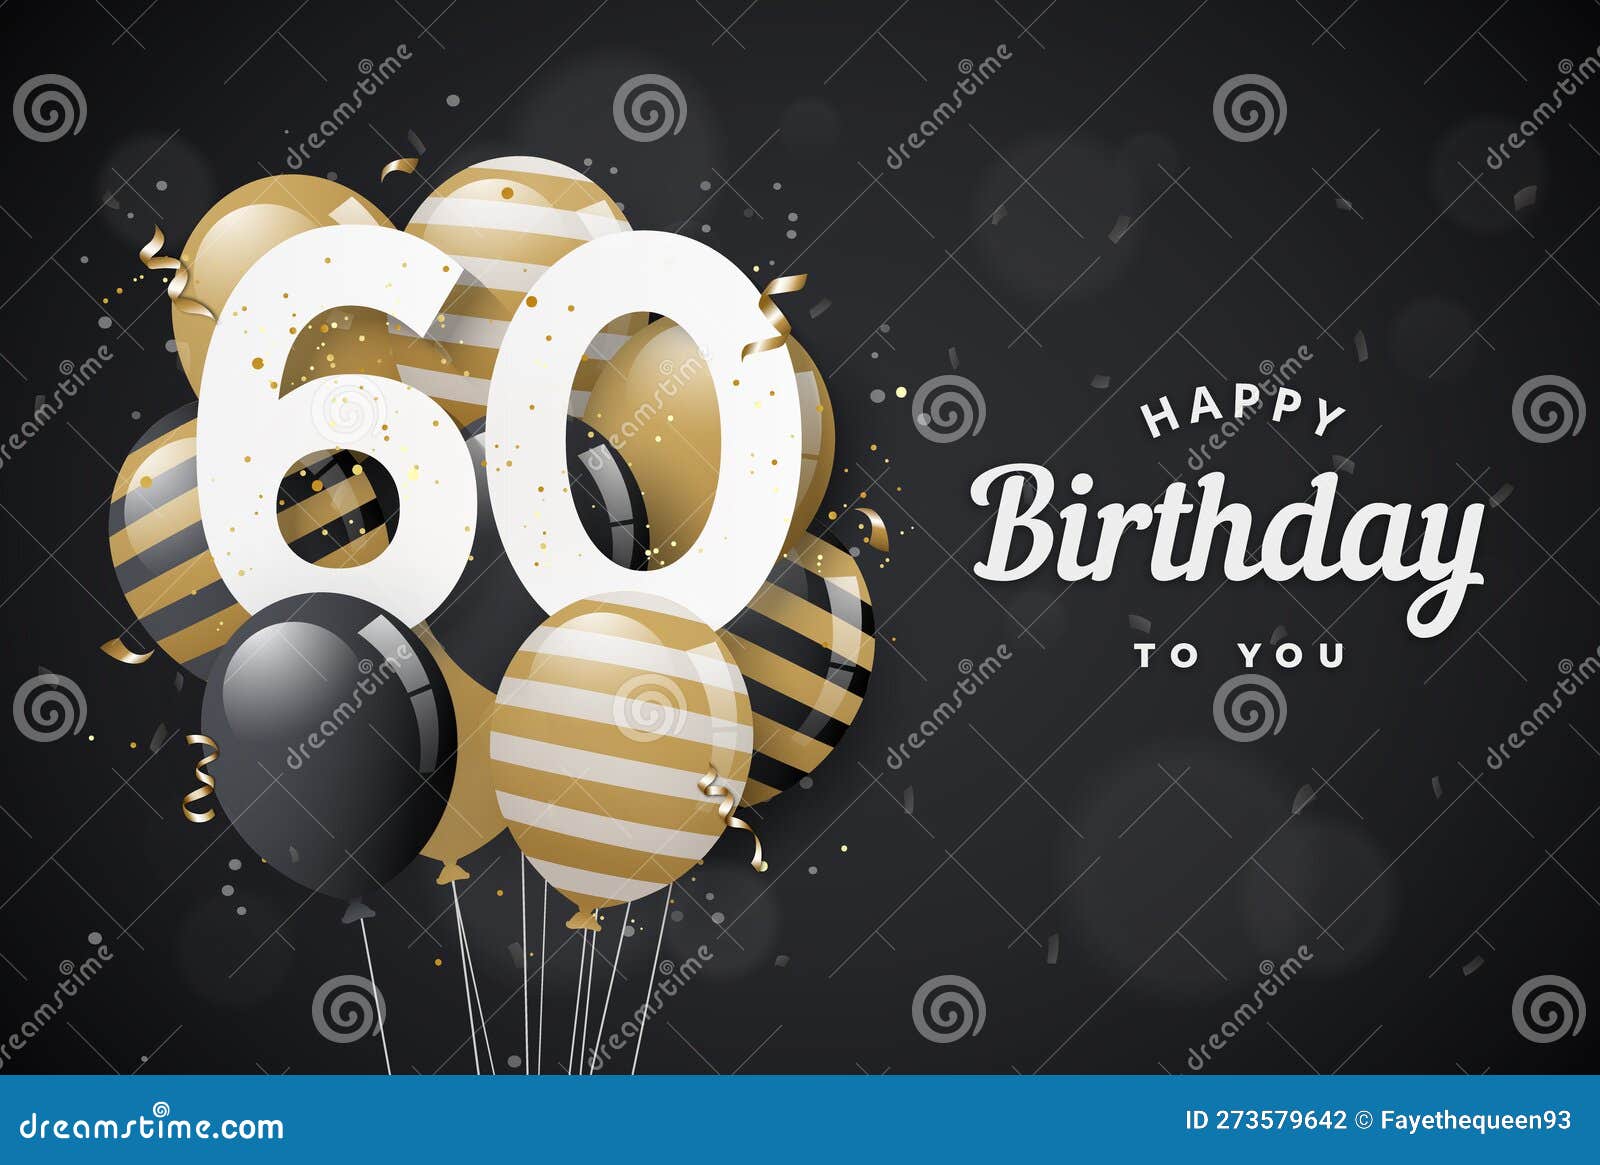 Feliz Cumpleaños 60 Con Fondo De Tarjeta De Saludo De Globos